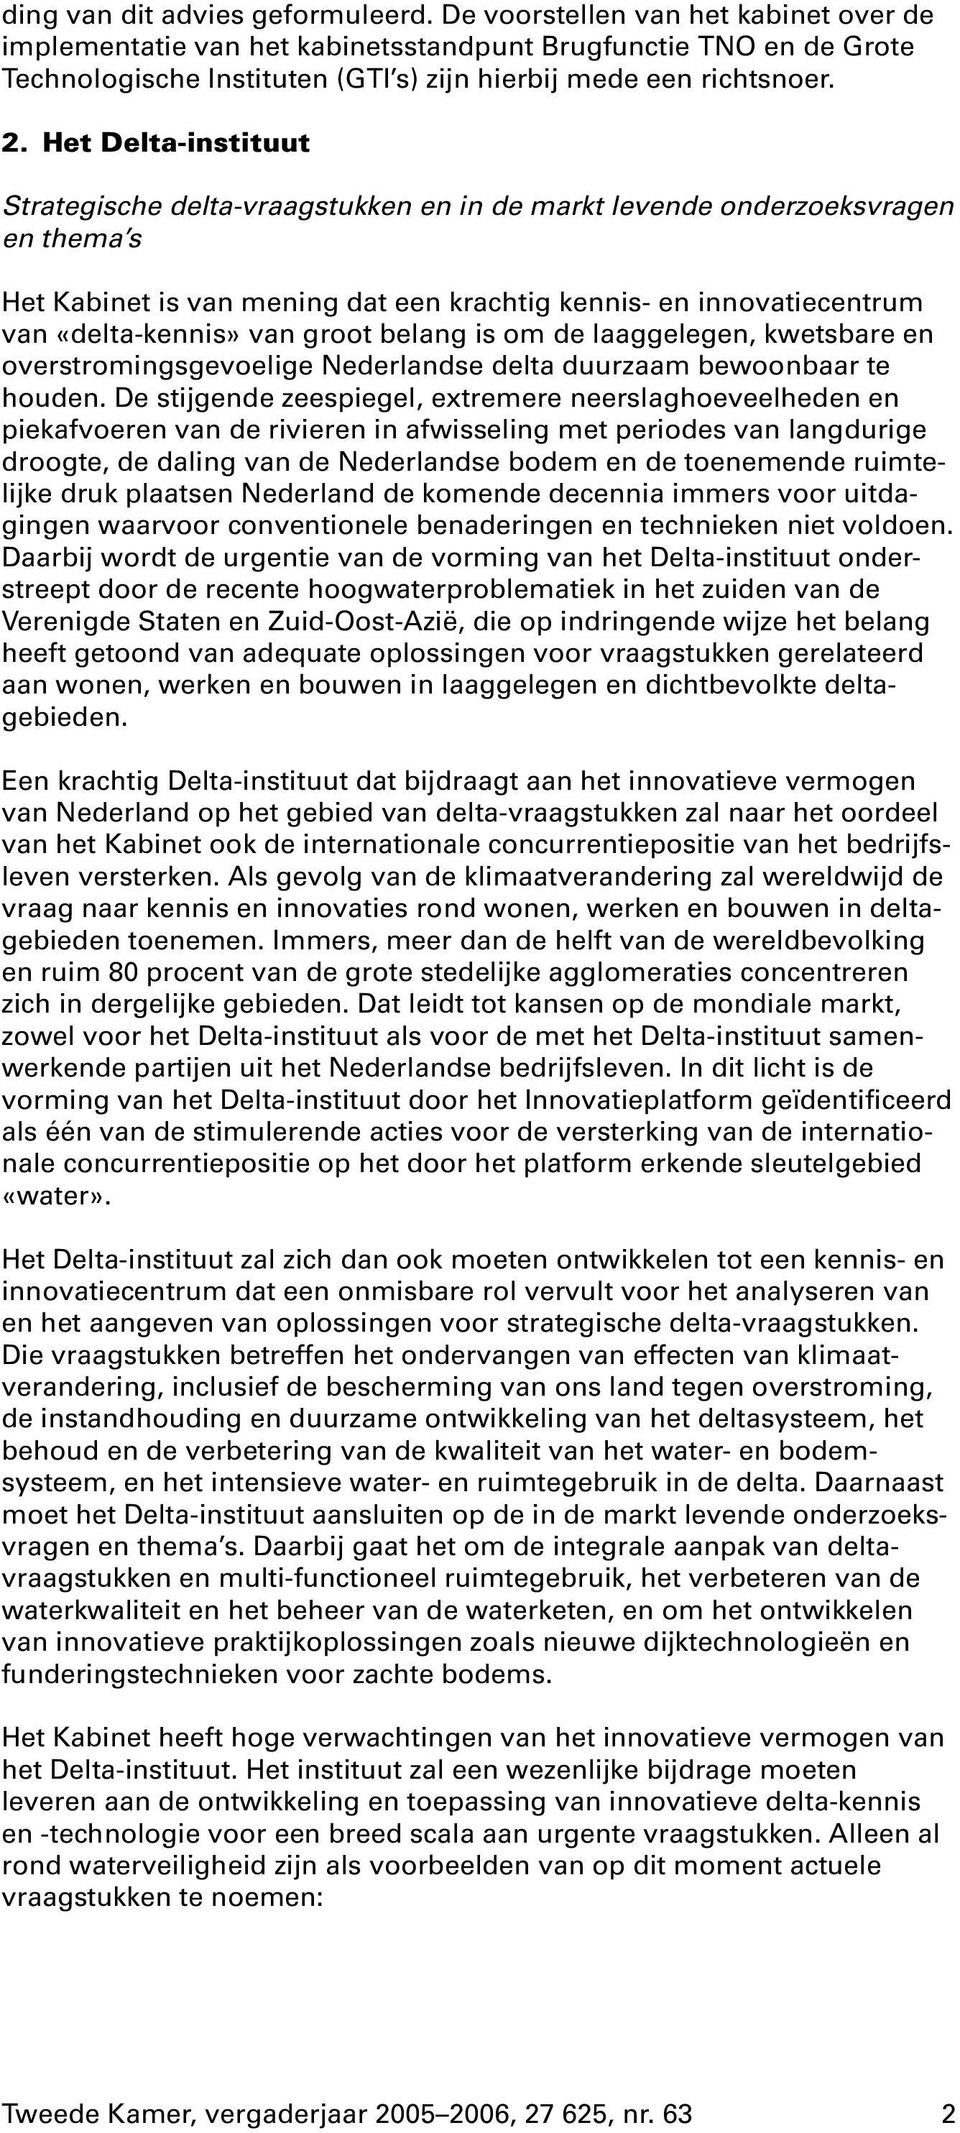 Het Delta-instituut Strategische delta-vraagstukken en in de markt levende onderzoeksvragen en thema s Het Kabinet is van mening dat een krachtig kennis- en innovatiecentrum van «delta-kennis» van